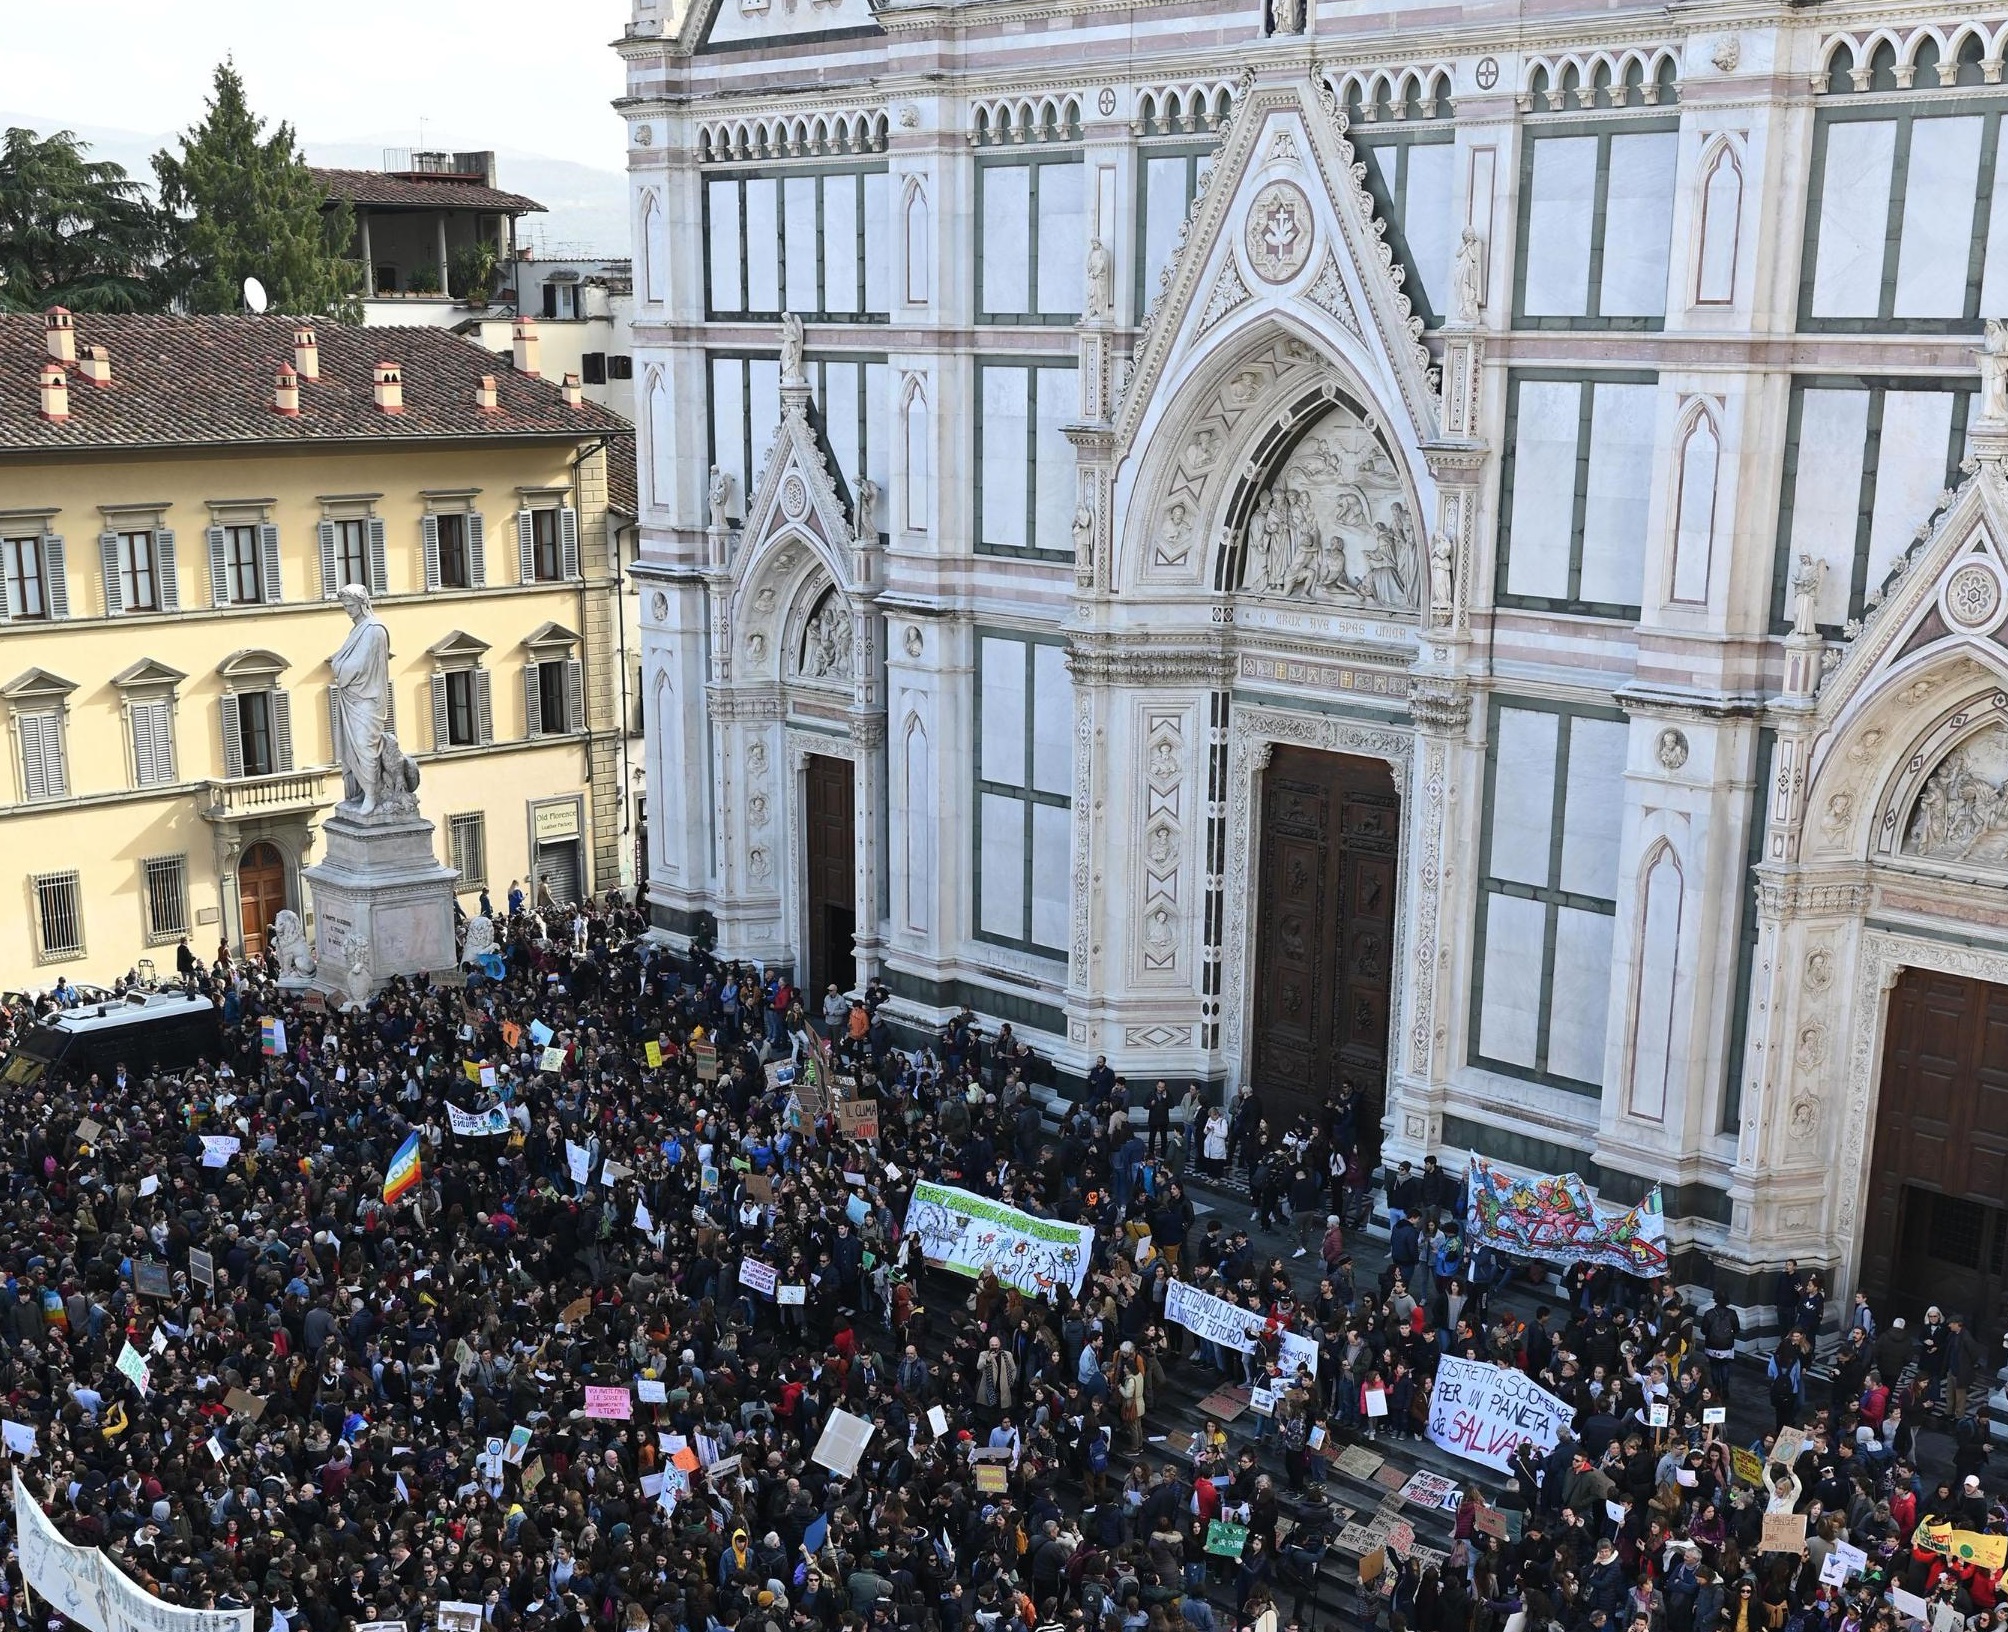 La protesta raggiunge anche Firenze, dove a Piazza Santa Croce si sono riuniti gli studenti toscani, sotto lo sguardo di Dante Alighieri